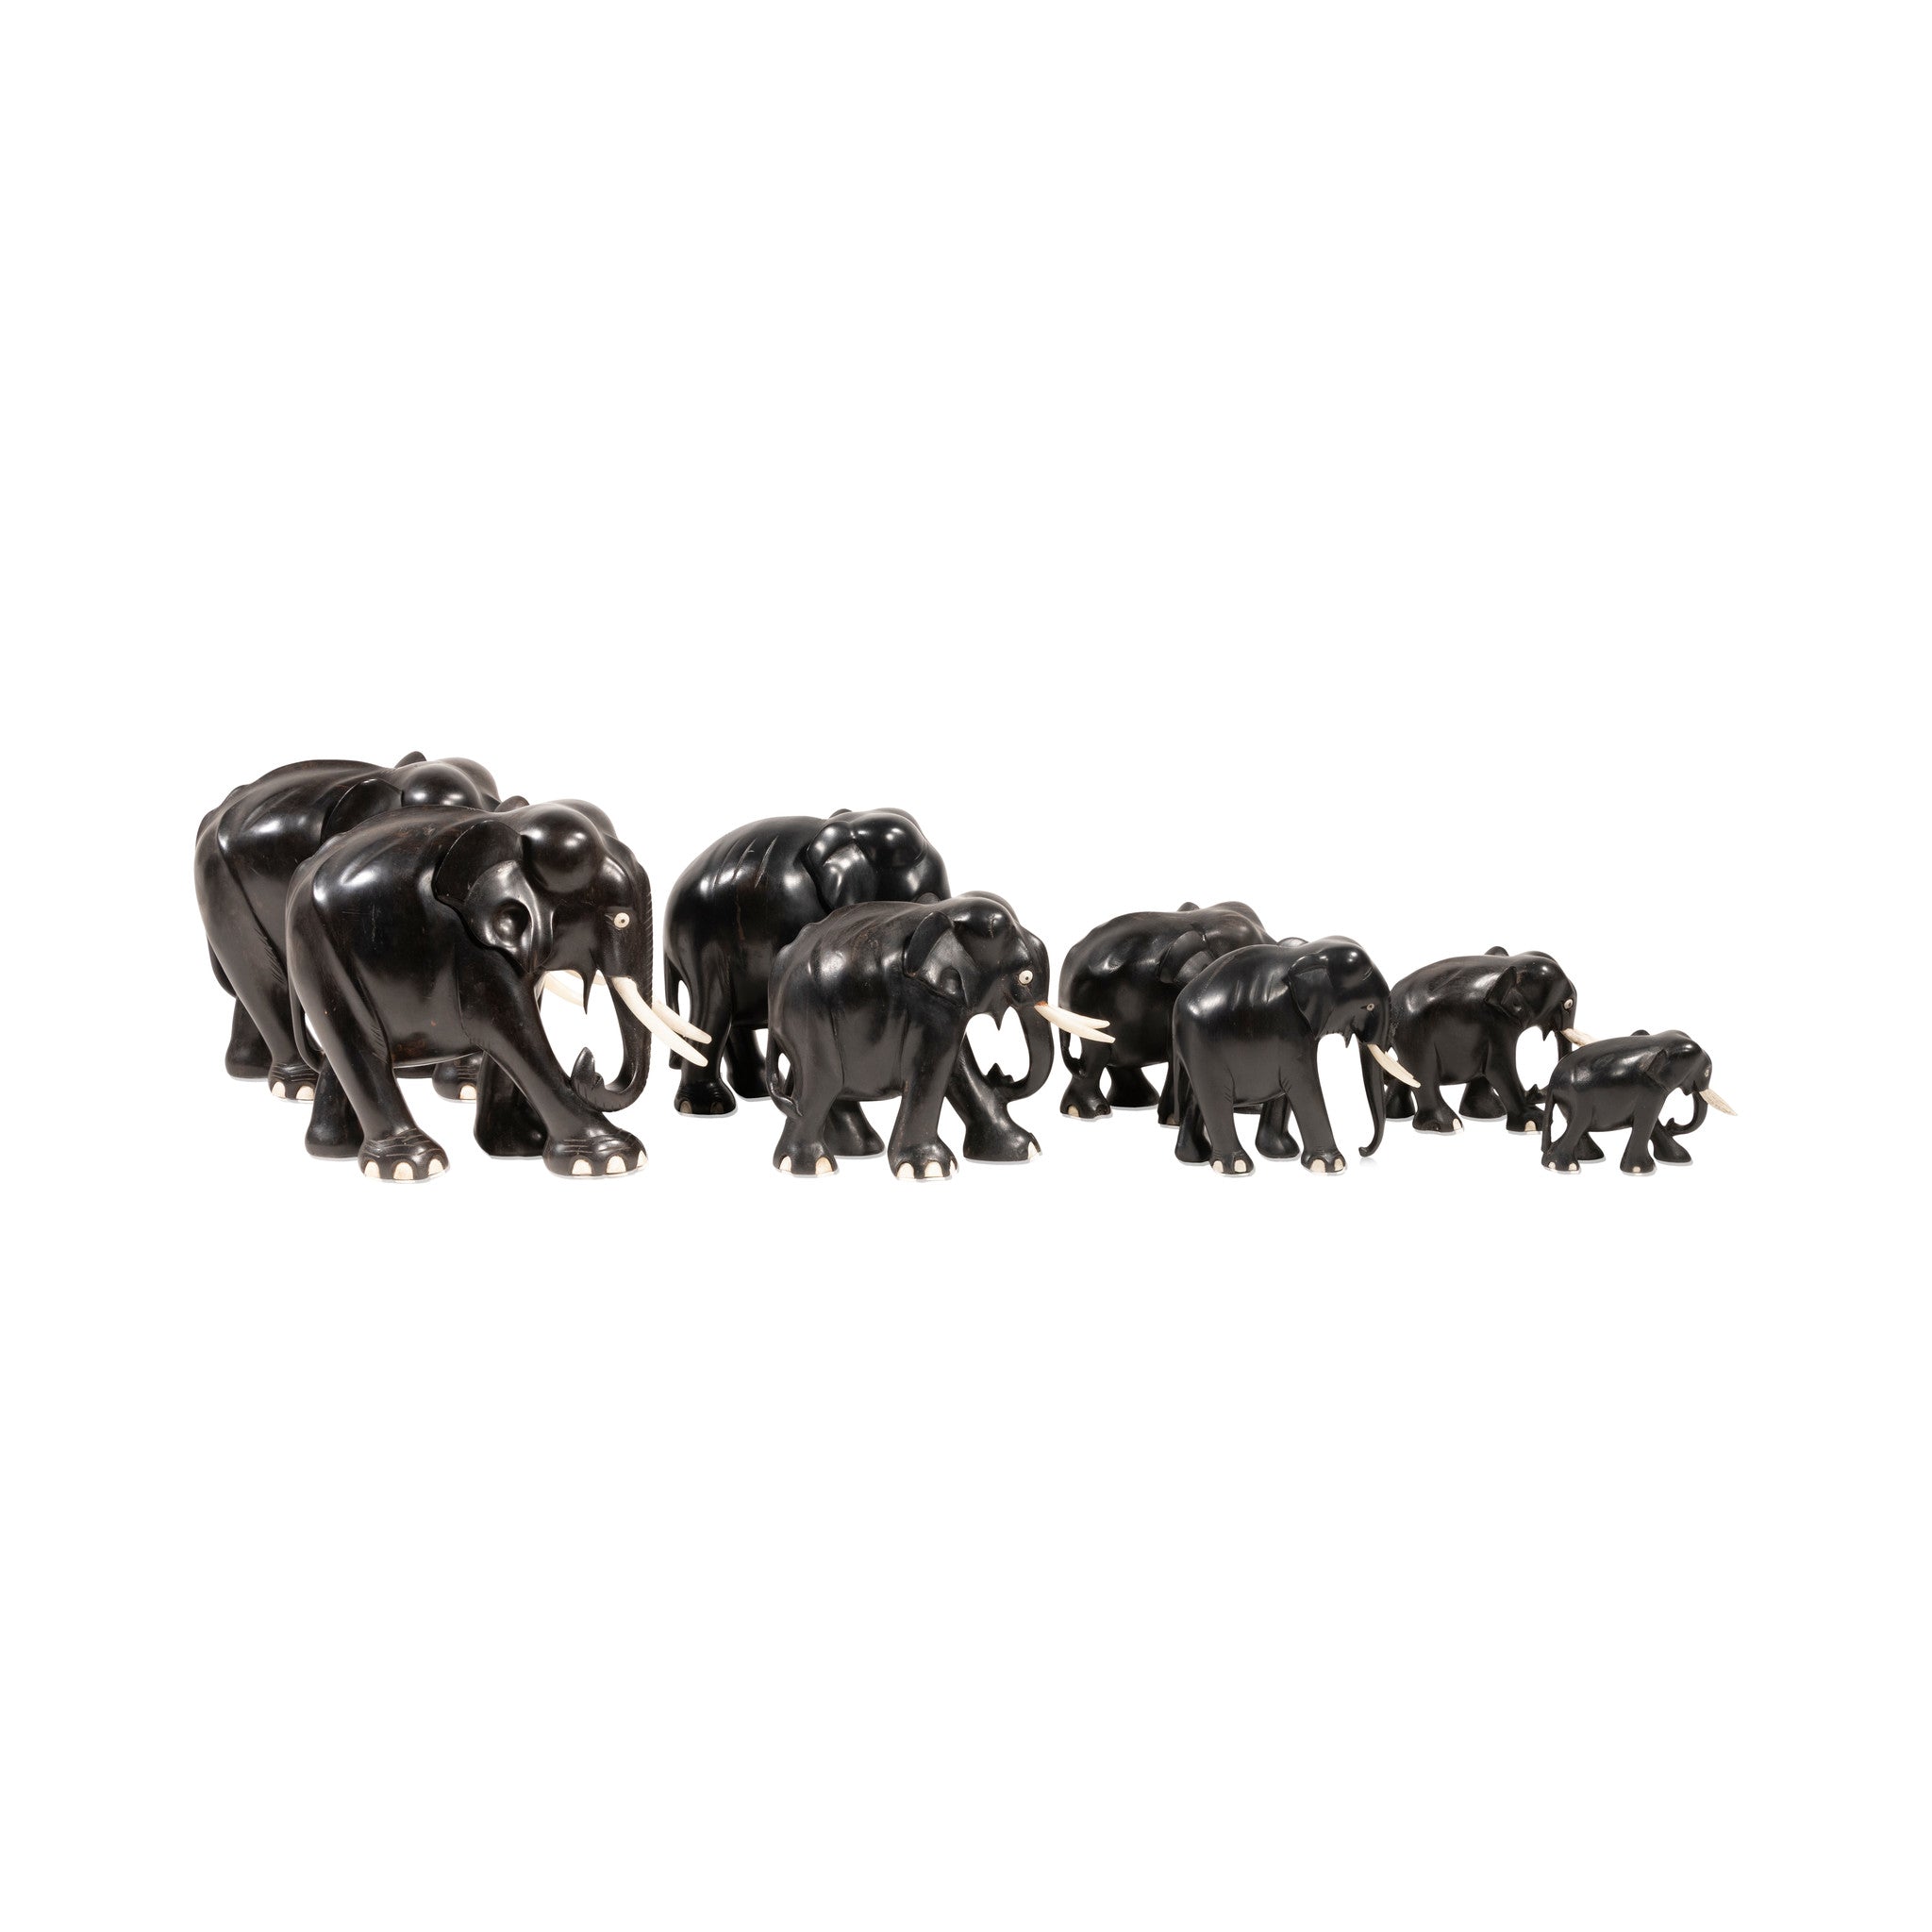 Ebony Elephant Collection, Furnishings, Decor, Carving